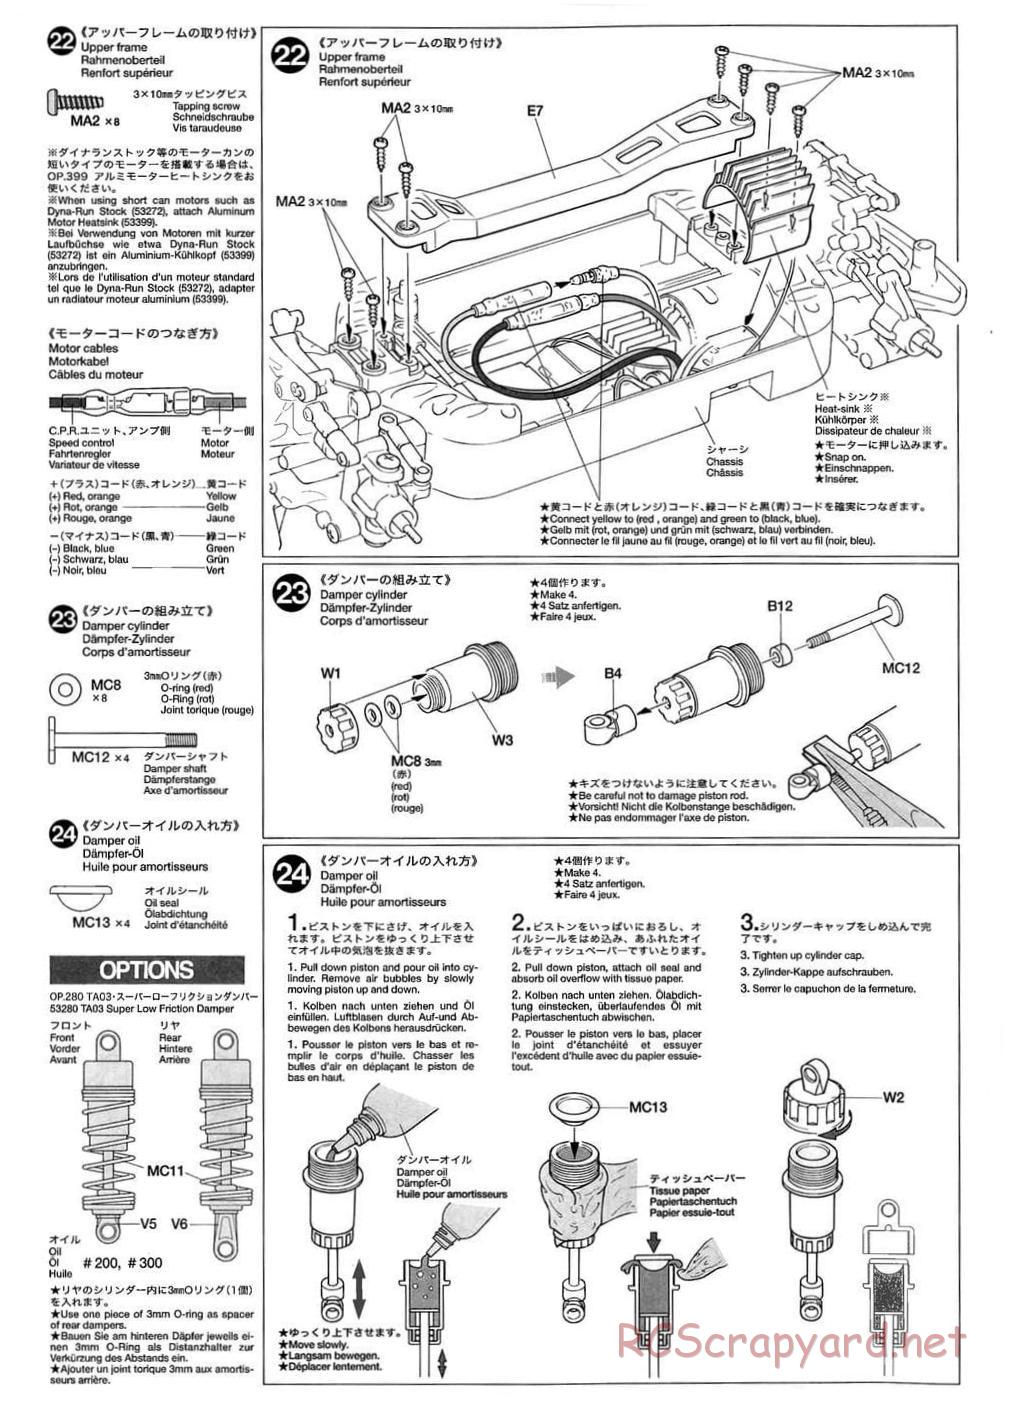 Tamiya - TB-01 Chassis - Manual - Page 12